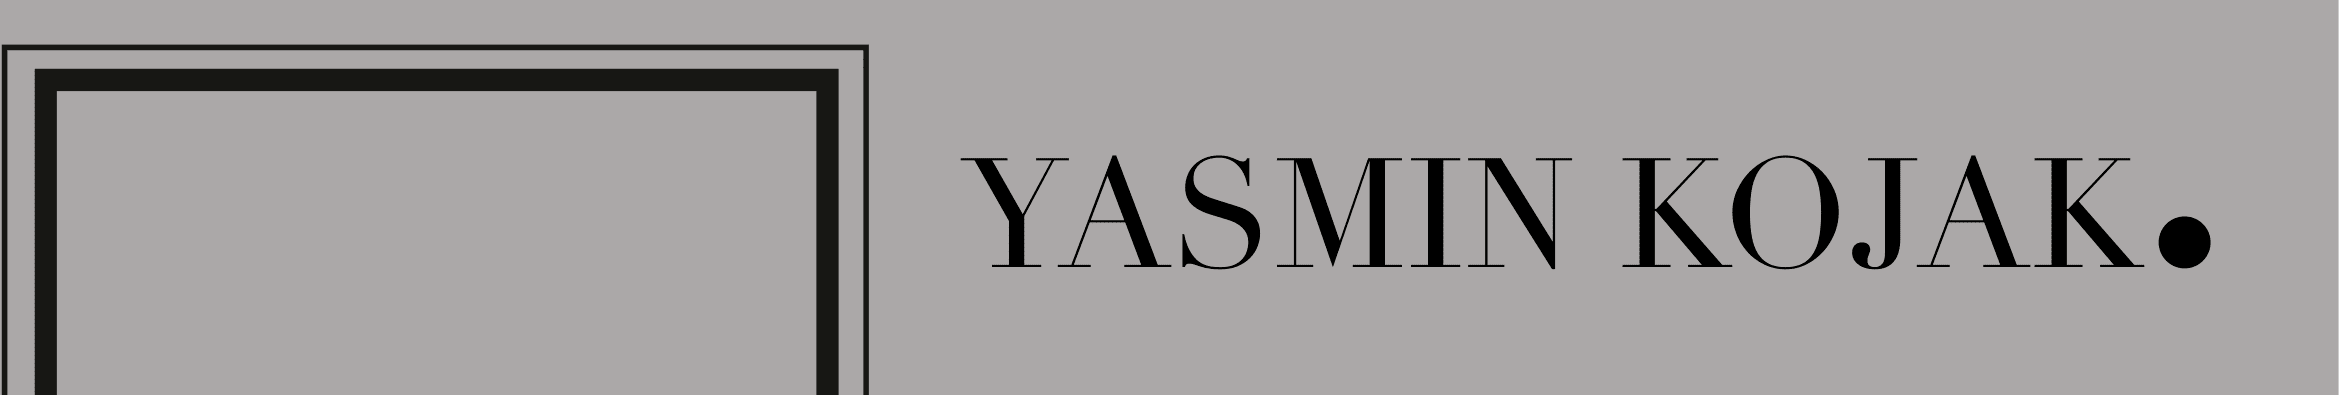 Yasmin Kojak's profile banner